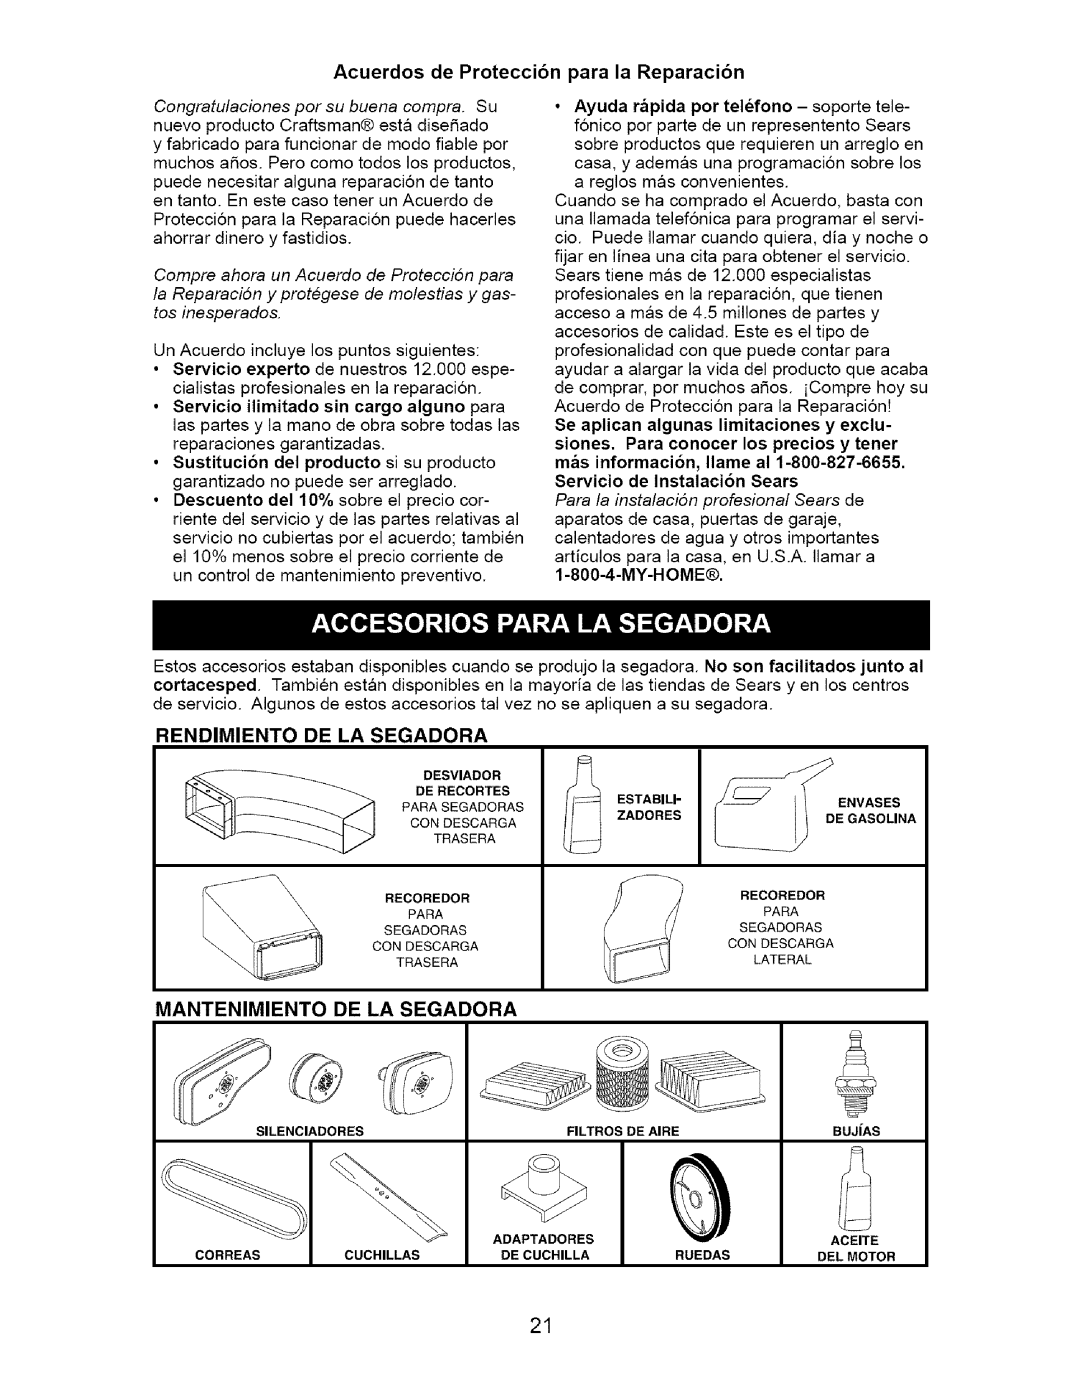 Craftsman 917.385140 owner manual Acuerdos de Protecci6n para la Reparaci6n, My-Home, Rendimiento De La Segadora 